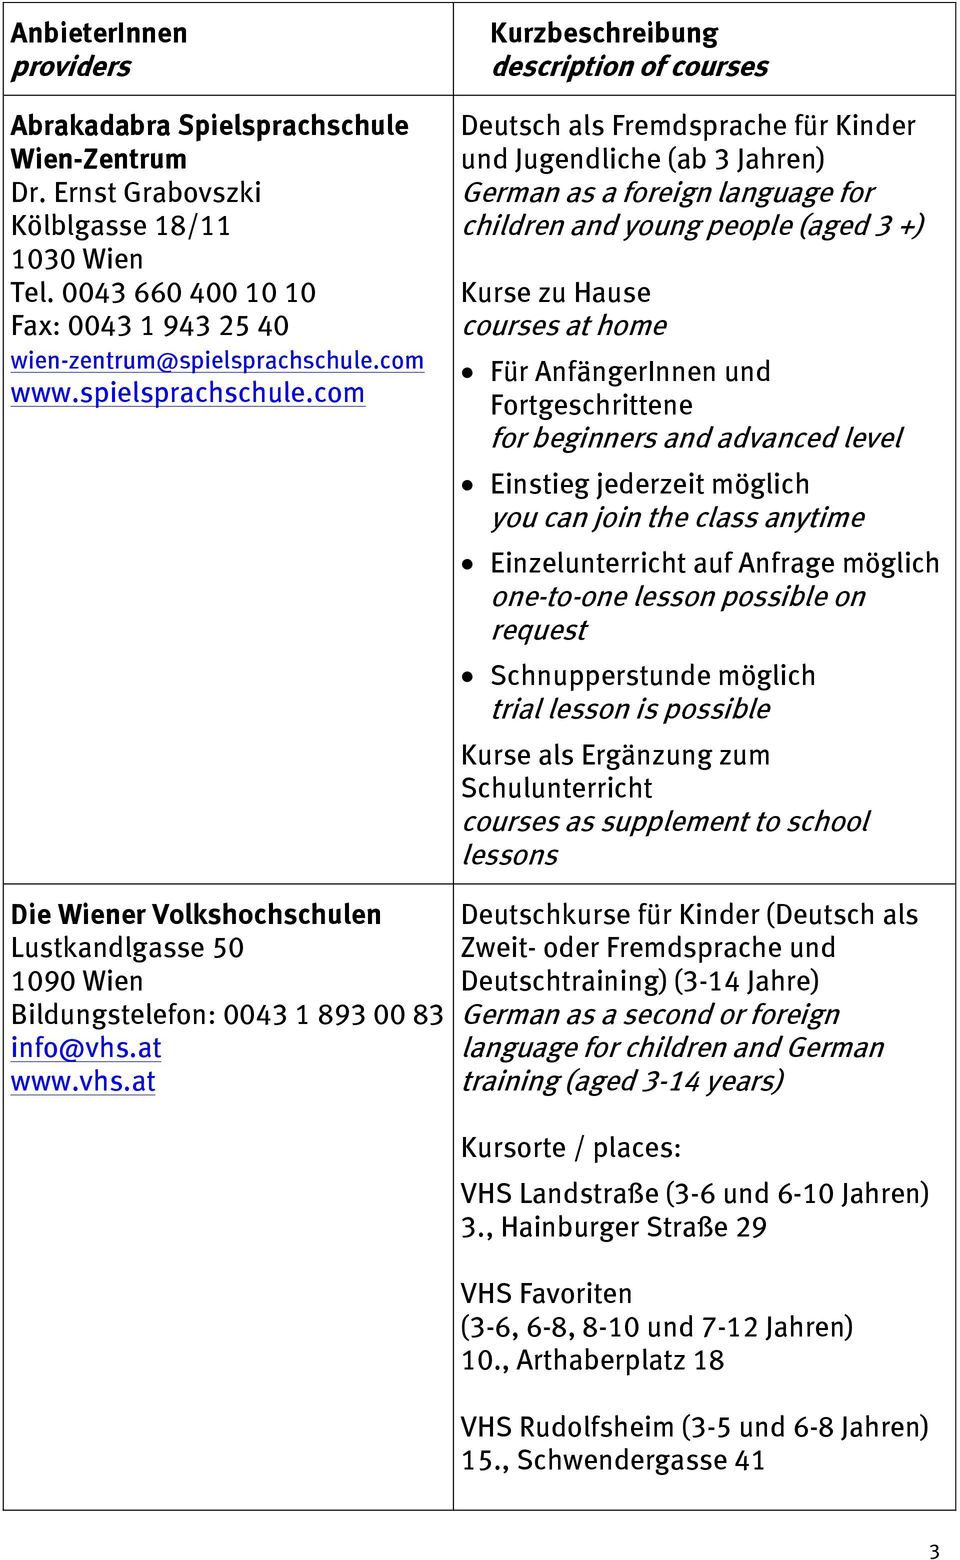 com Kurzbeschreibung description of courses Deutsch als Fremdsprache für Kinder und Jugendliche (ab 3 Jahren) German as a foreign language for children and young people (aged 3 +) Kurse zu Hause